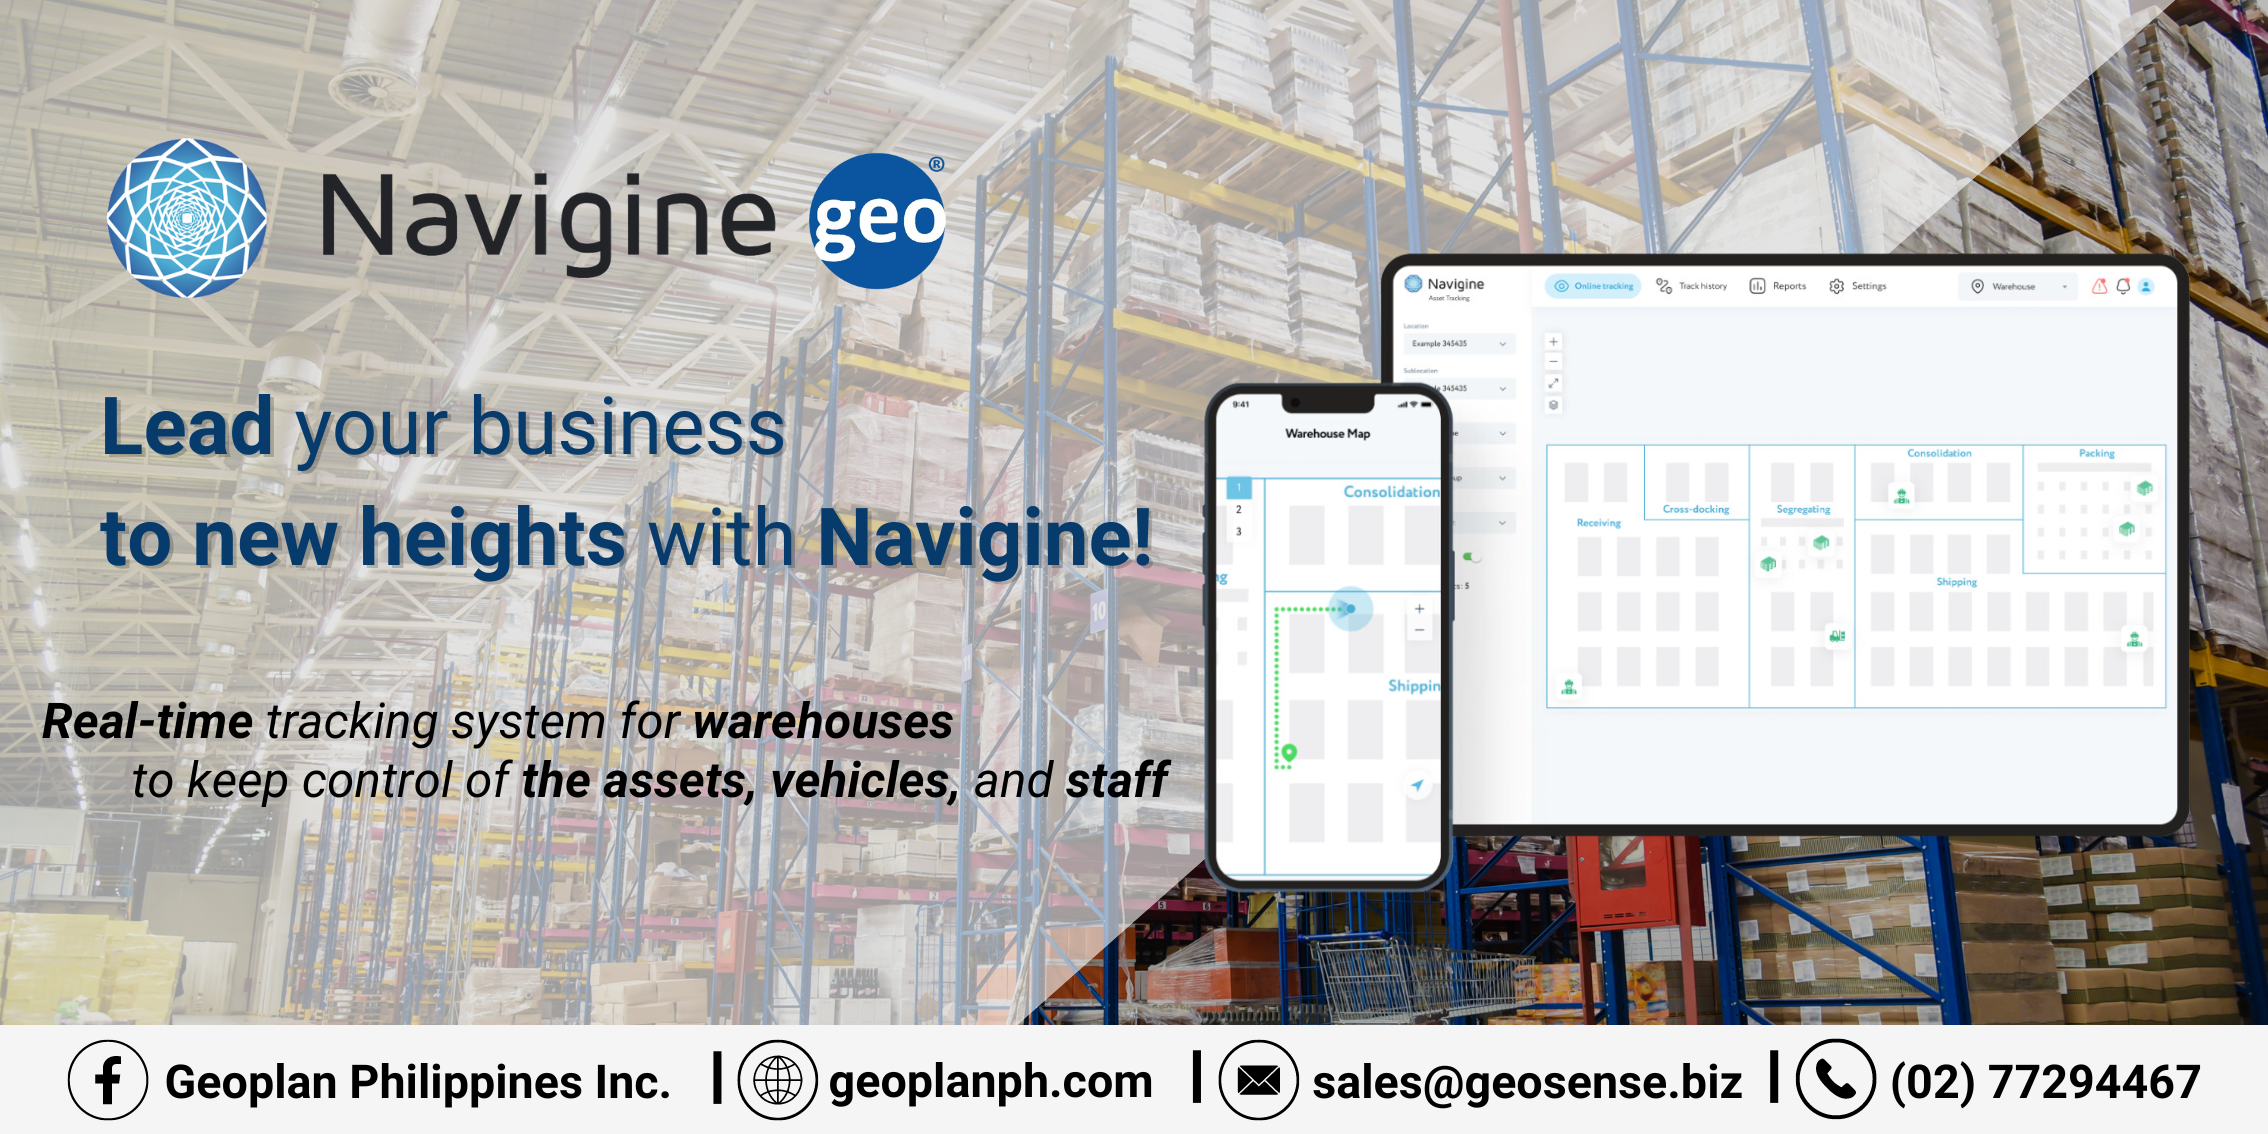 Navigine: Better Your Warehouse Navigation